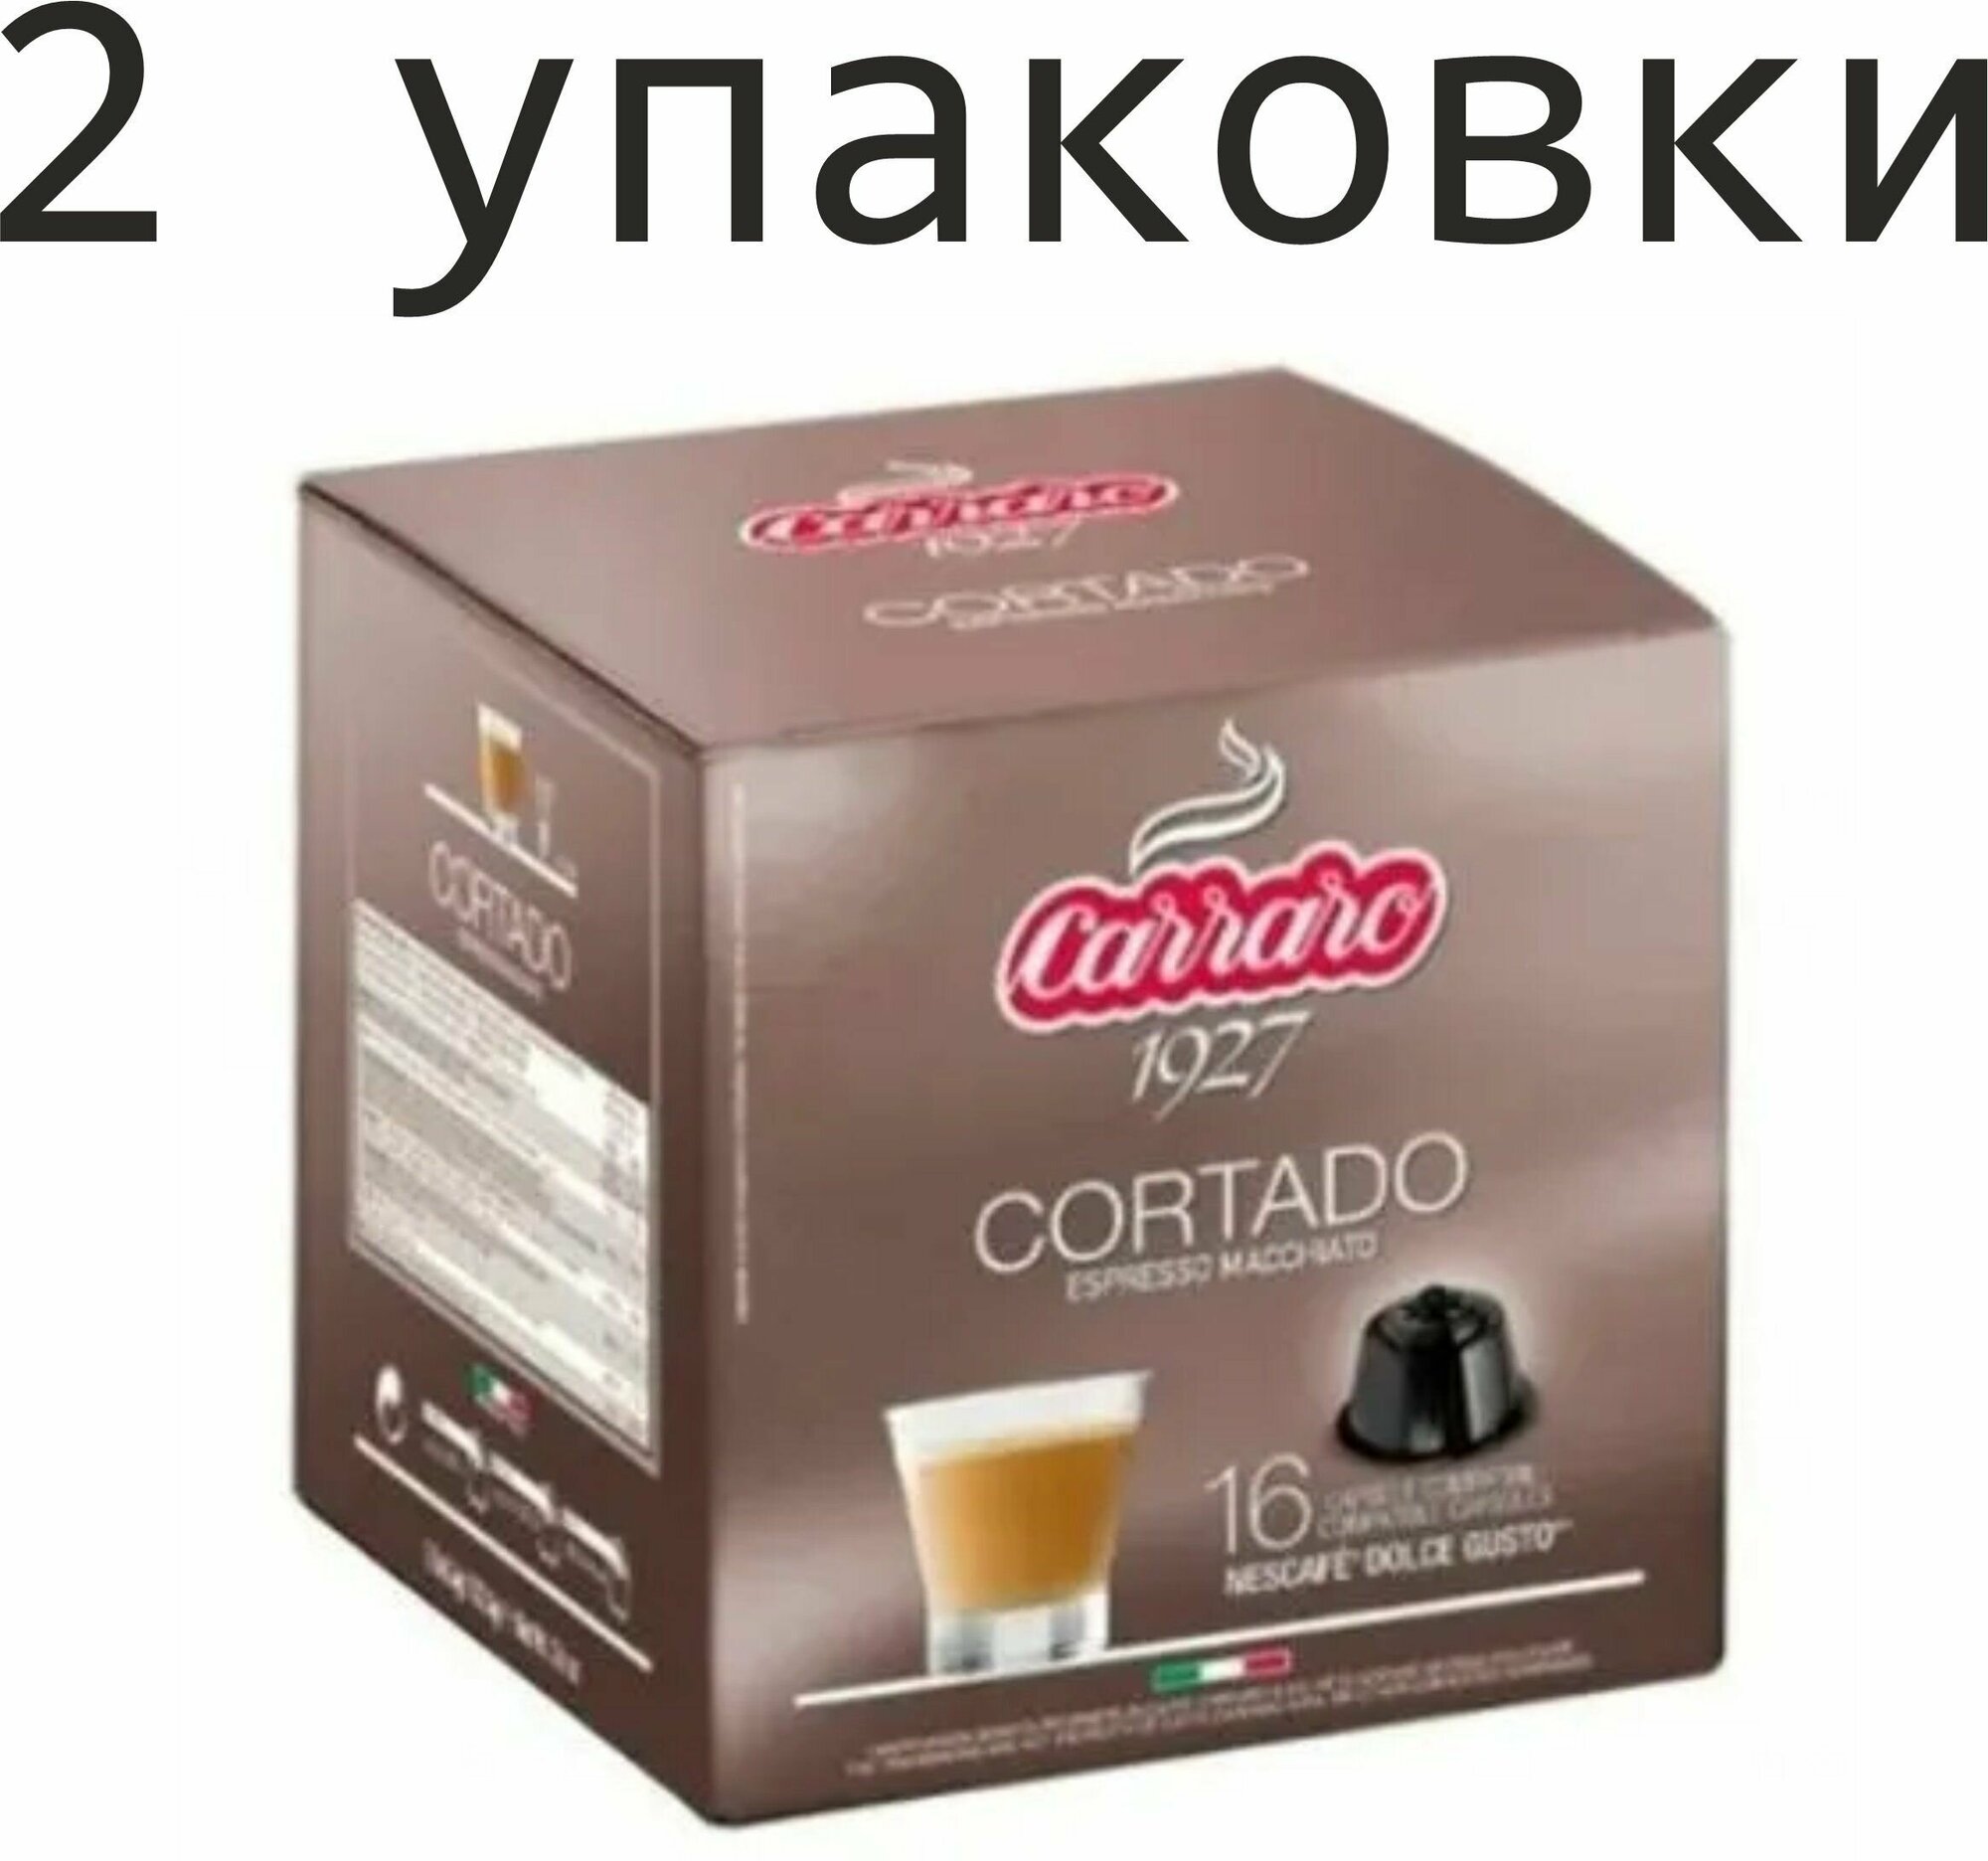 2 упаковки. Кофе в капсулах Carraro Cortado, для Dolce Gusto, 16 шт. (32 шт) Италия